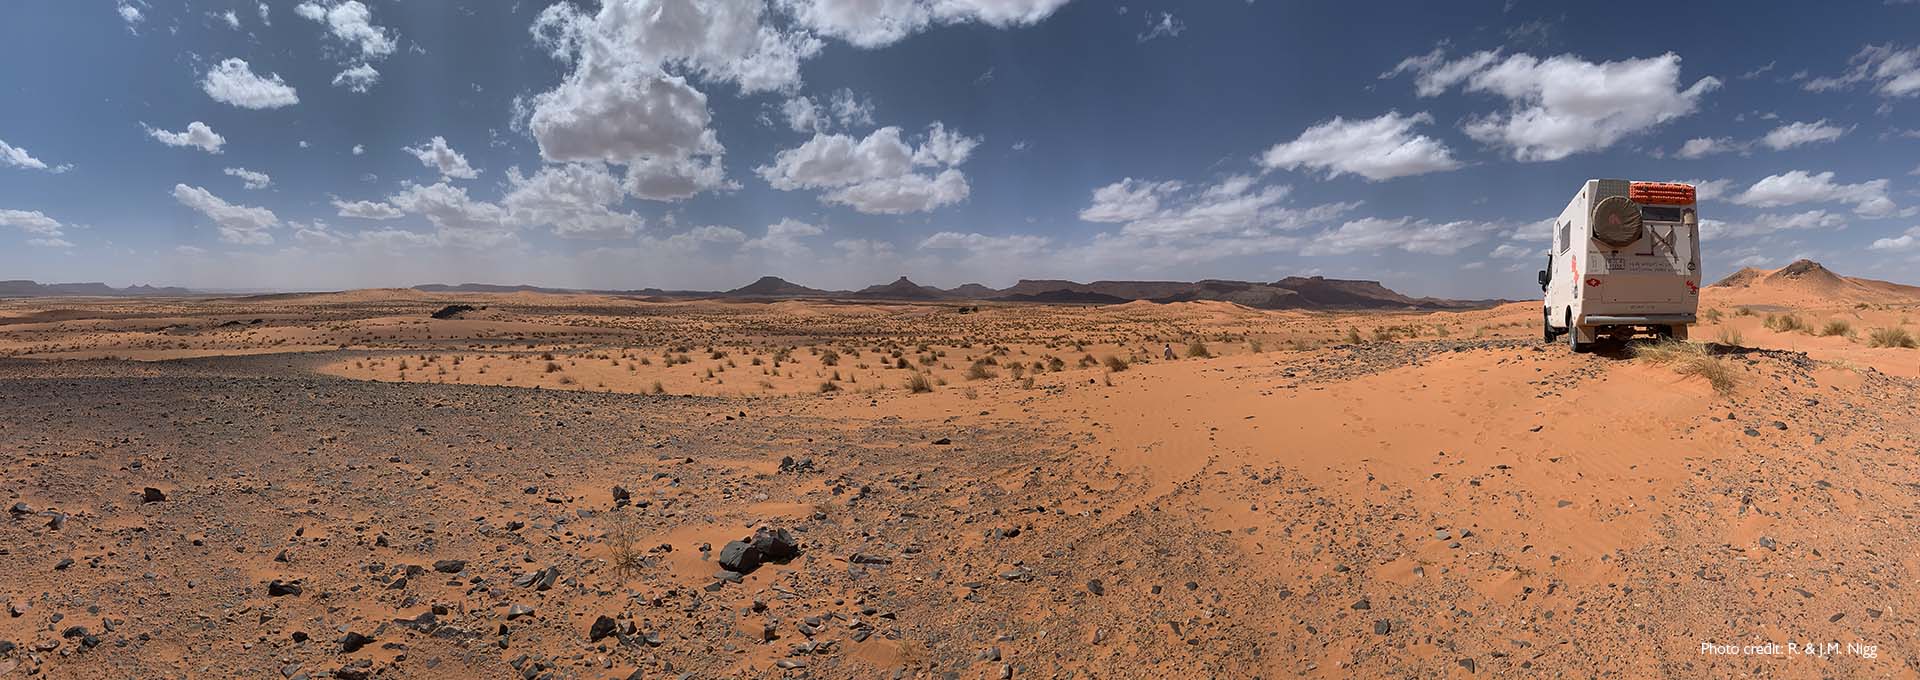 Le camping-car des utilisateurs d'aides auditives Bernafon Alpha faisant du hors-piste dans le désert avec un ciel bleu, quelques nuages blancs et du sable rougeâtre